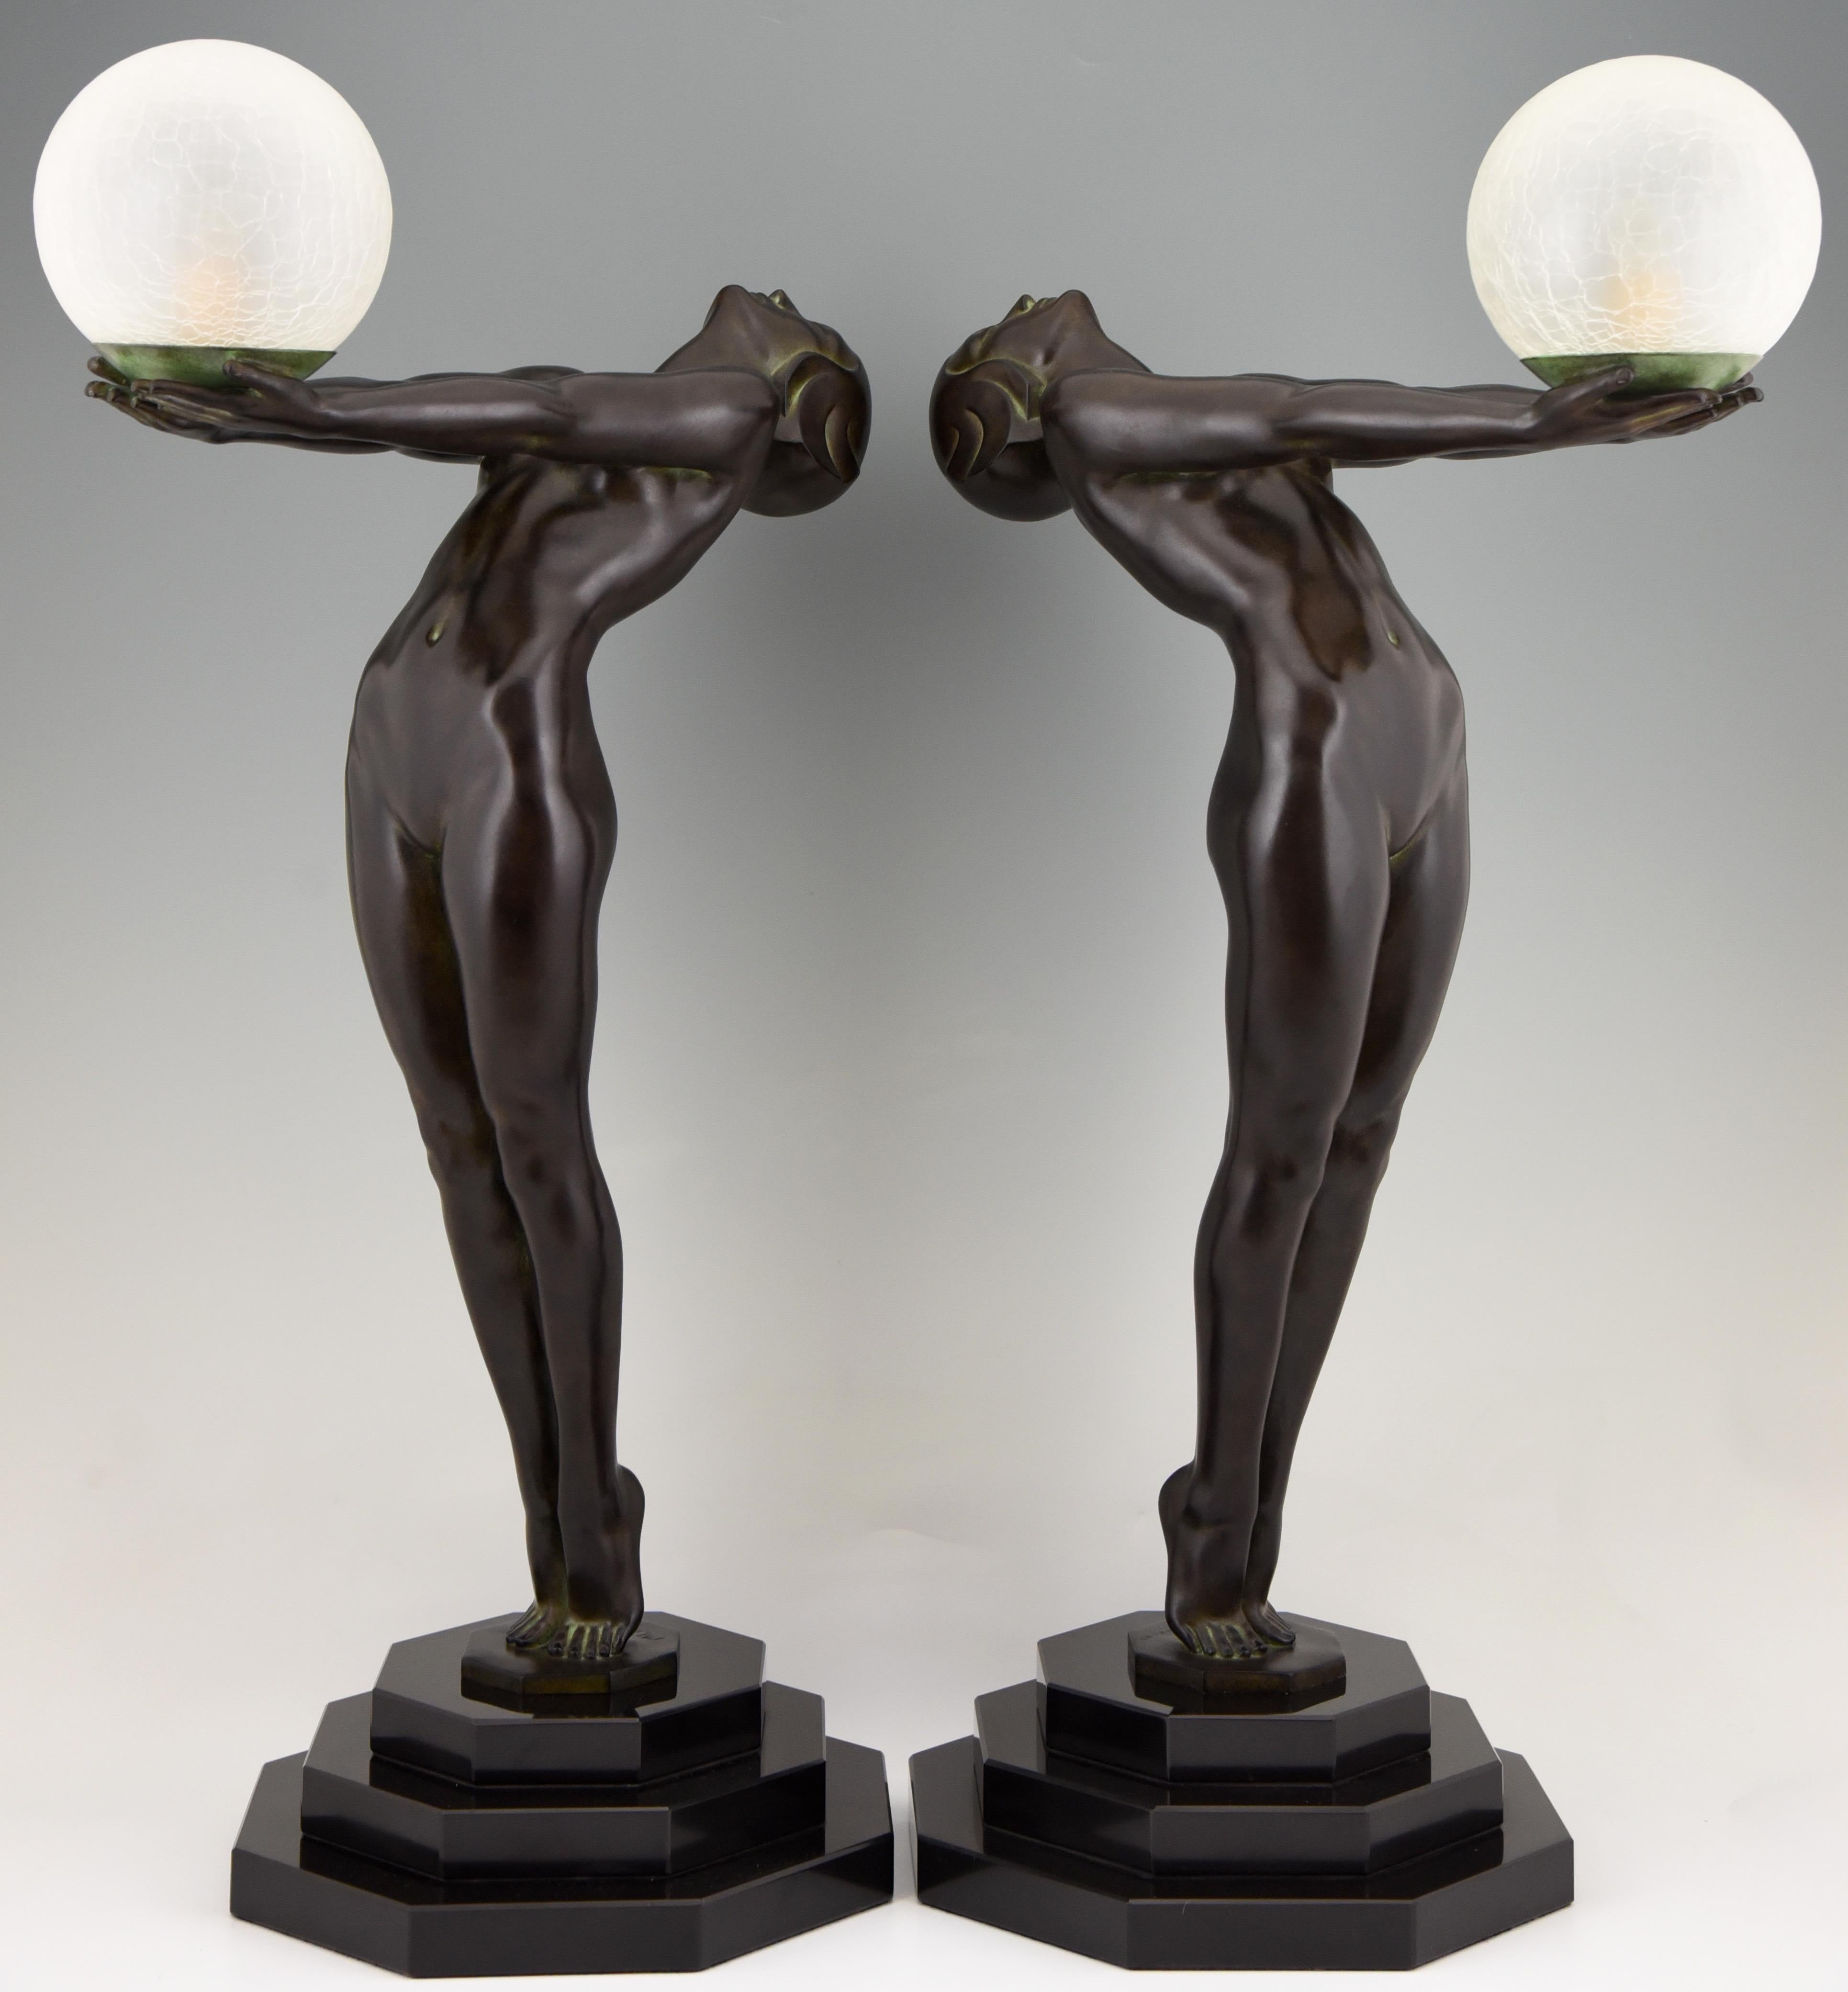 Clarte, ikonische 84 cm / 33 inch hohe figurale Tischlampe im Art Deco Style mit einem stehenden Akt, der einen Glasschirm hält, von Max Le Verrier mit Gießereiprägung.
Entworfen im Jahr 1928.
Posthumer zeitgenössischer Abguss in der Gießerei Max Le